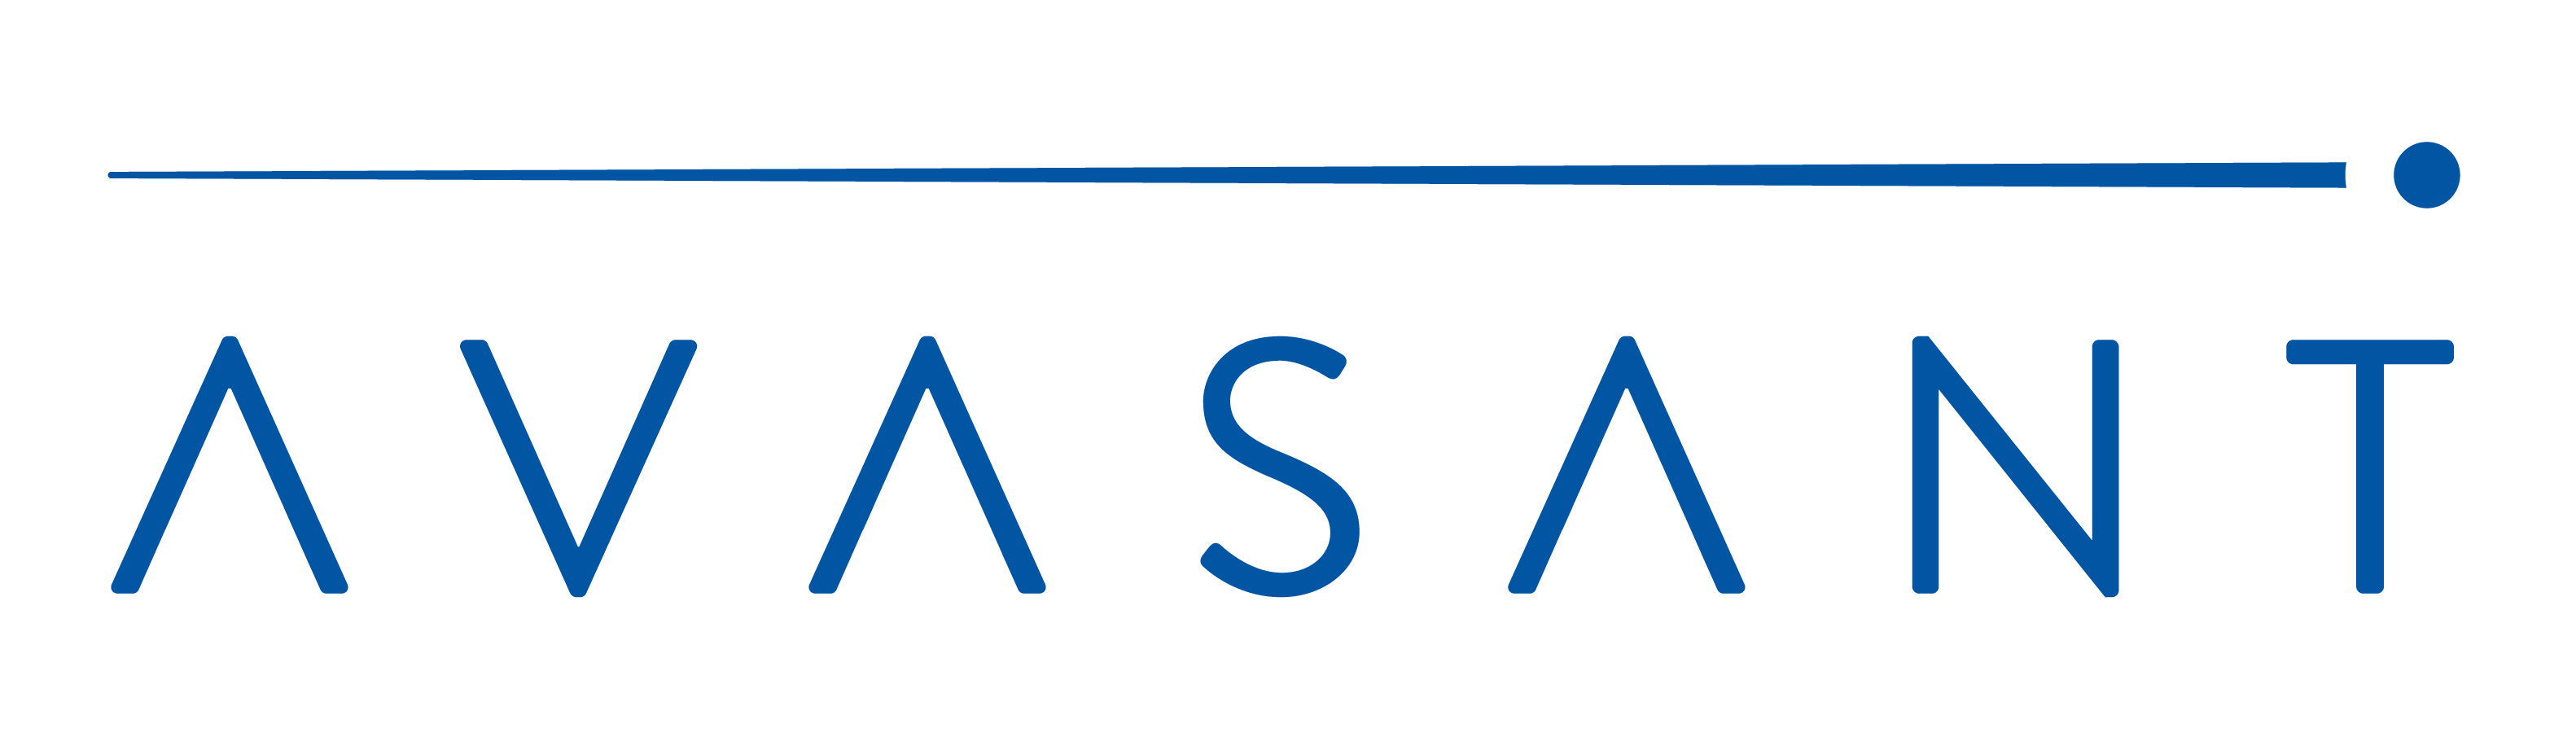 Avasant-logo